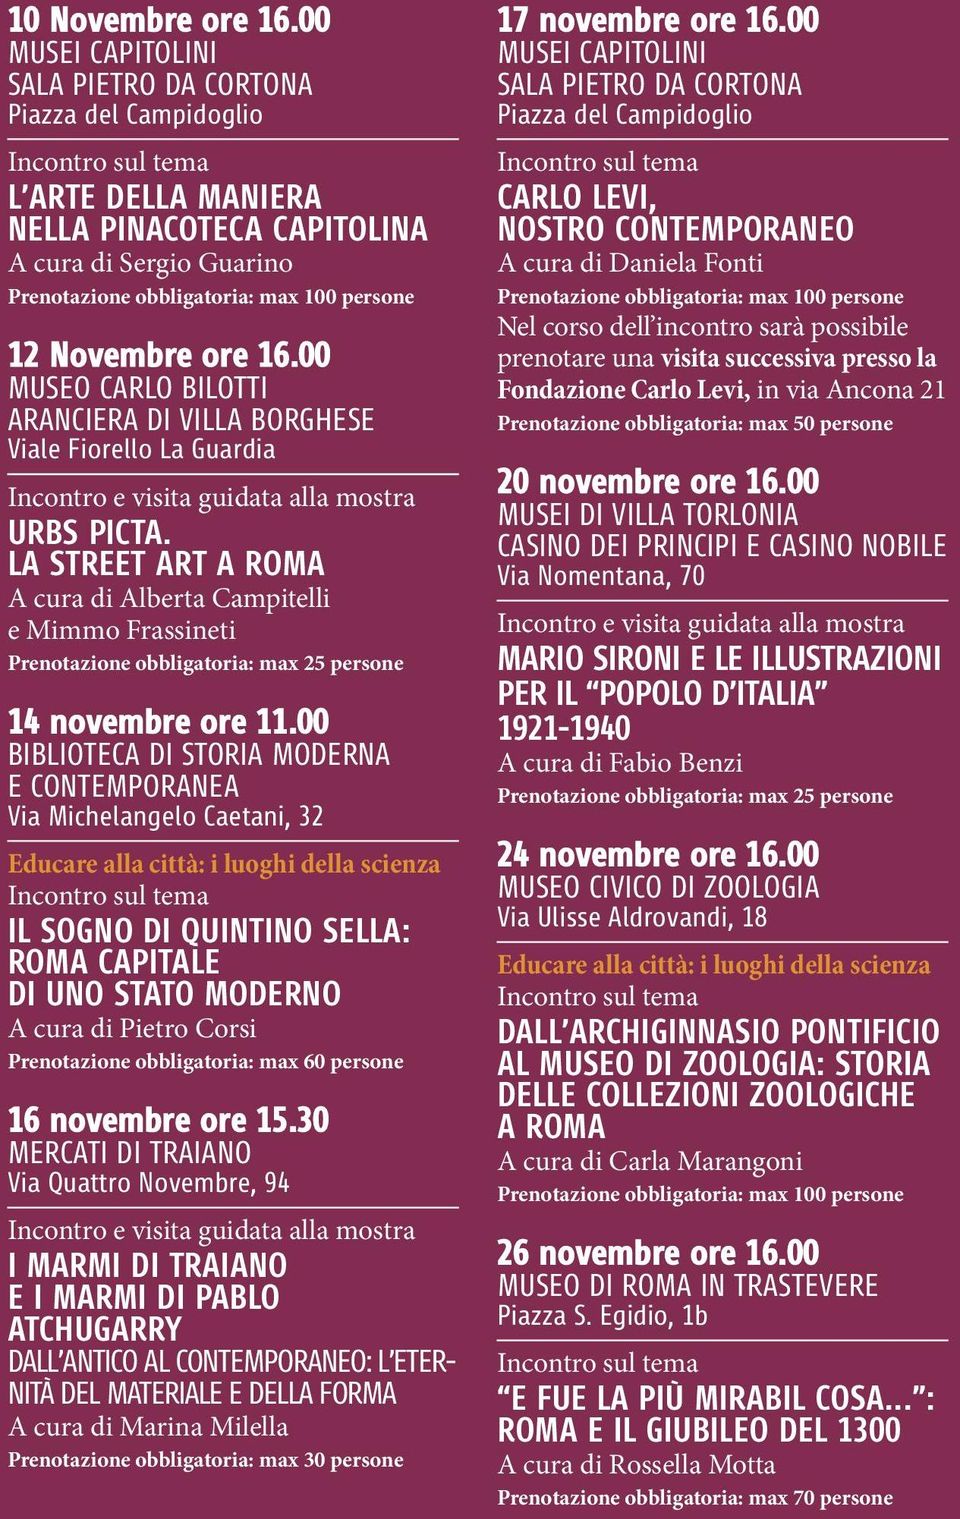 LA STREET ART A ROMA A cura di Alberta Campitelli e Mimmo Frassineti Prenotazione obbligatoria: max 25 persone 14 novembre ore 11.